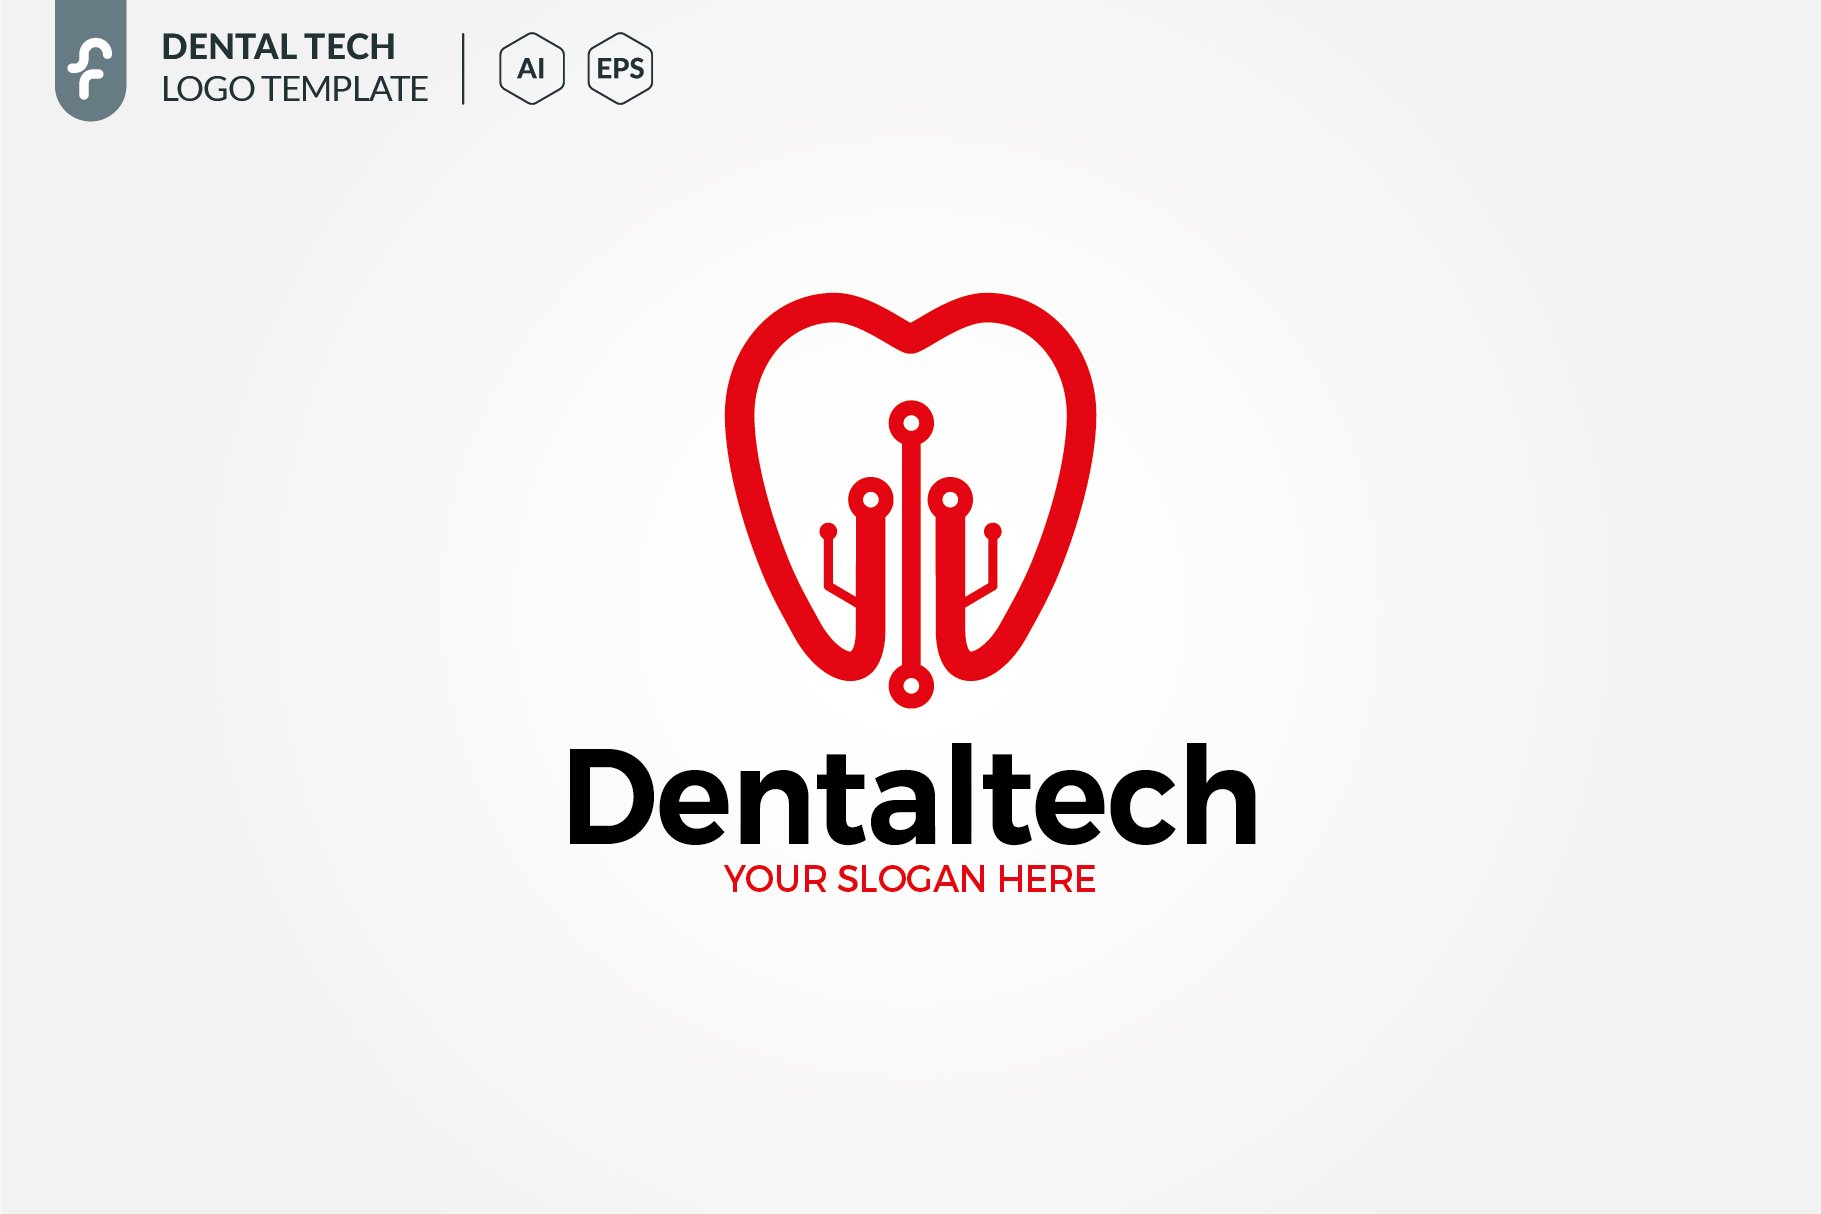 Dental Tech Logo preview image.